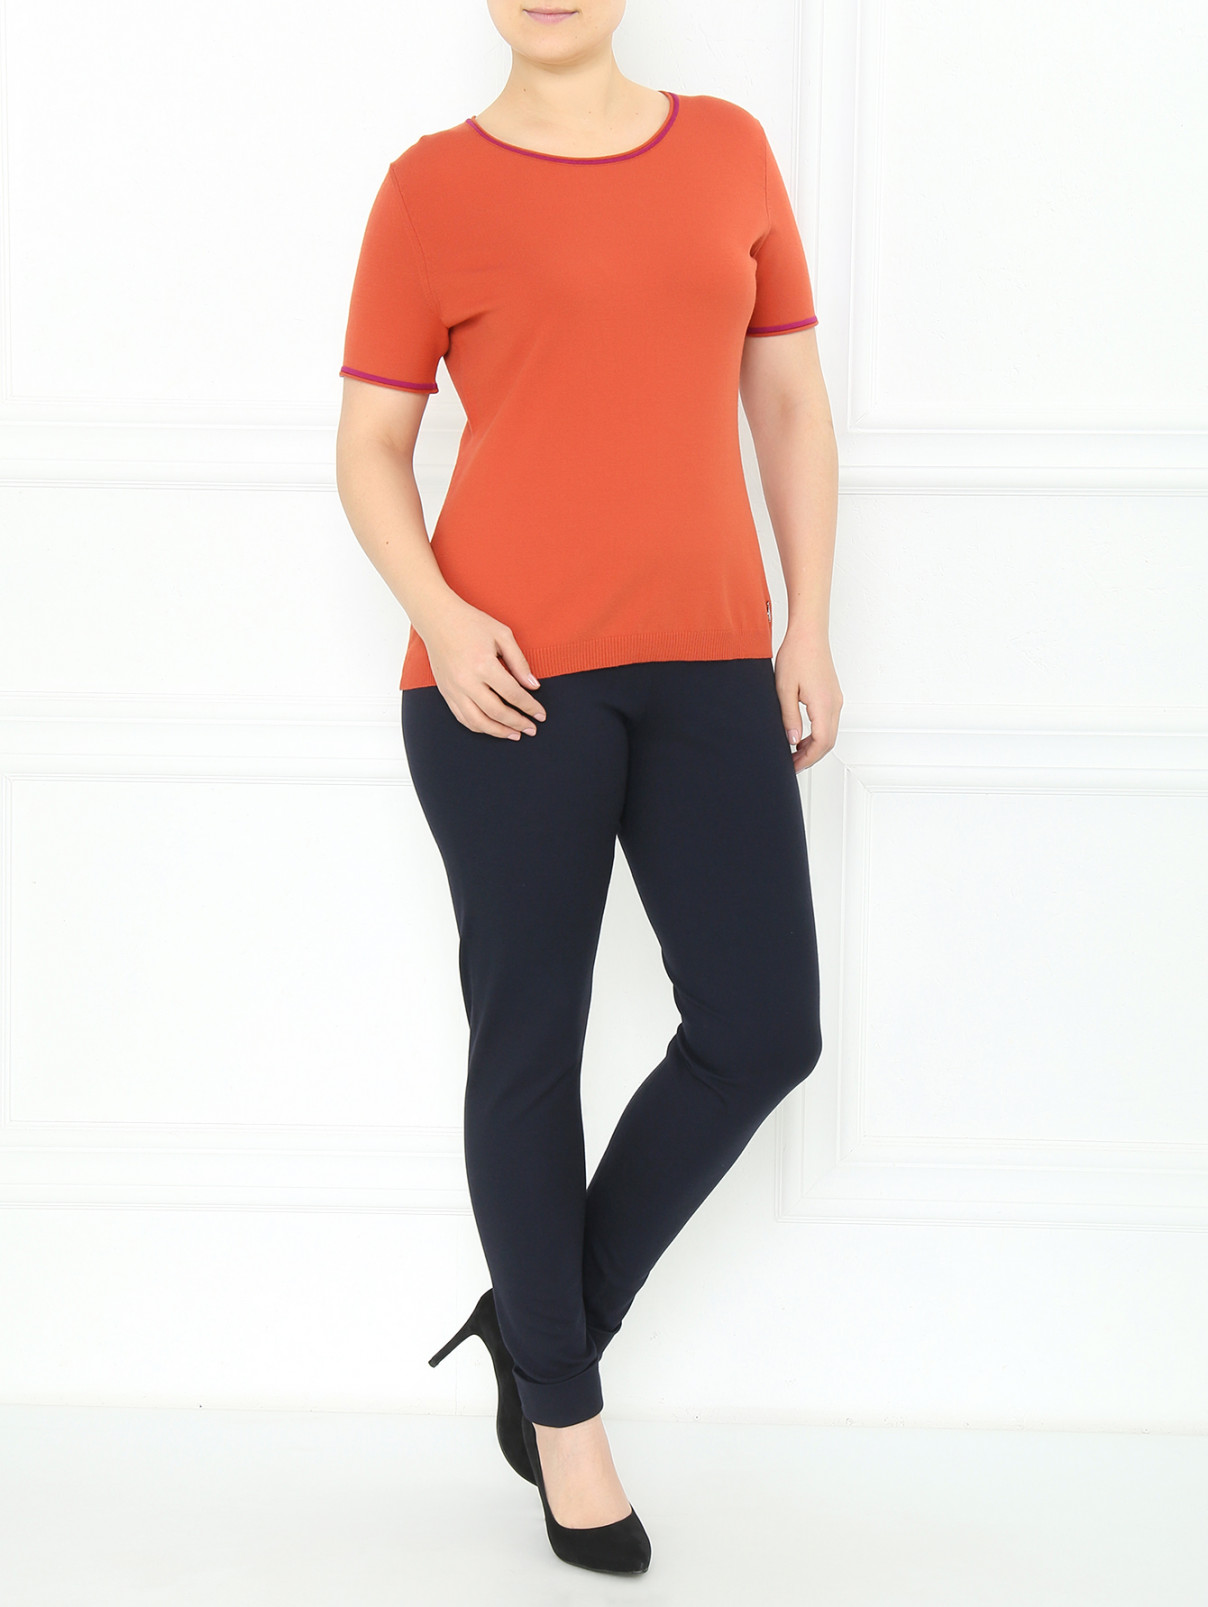 Джемпер с коротким рукавом и  контрастной отделкой Marina Sport  –  Модель Общий вид  – Цвет:  Оранжевый